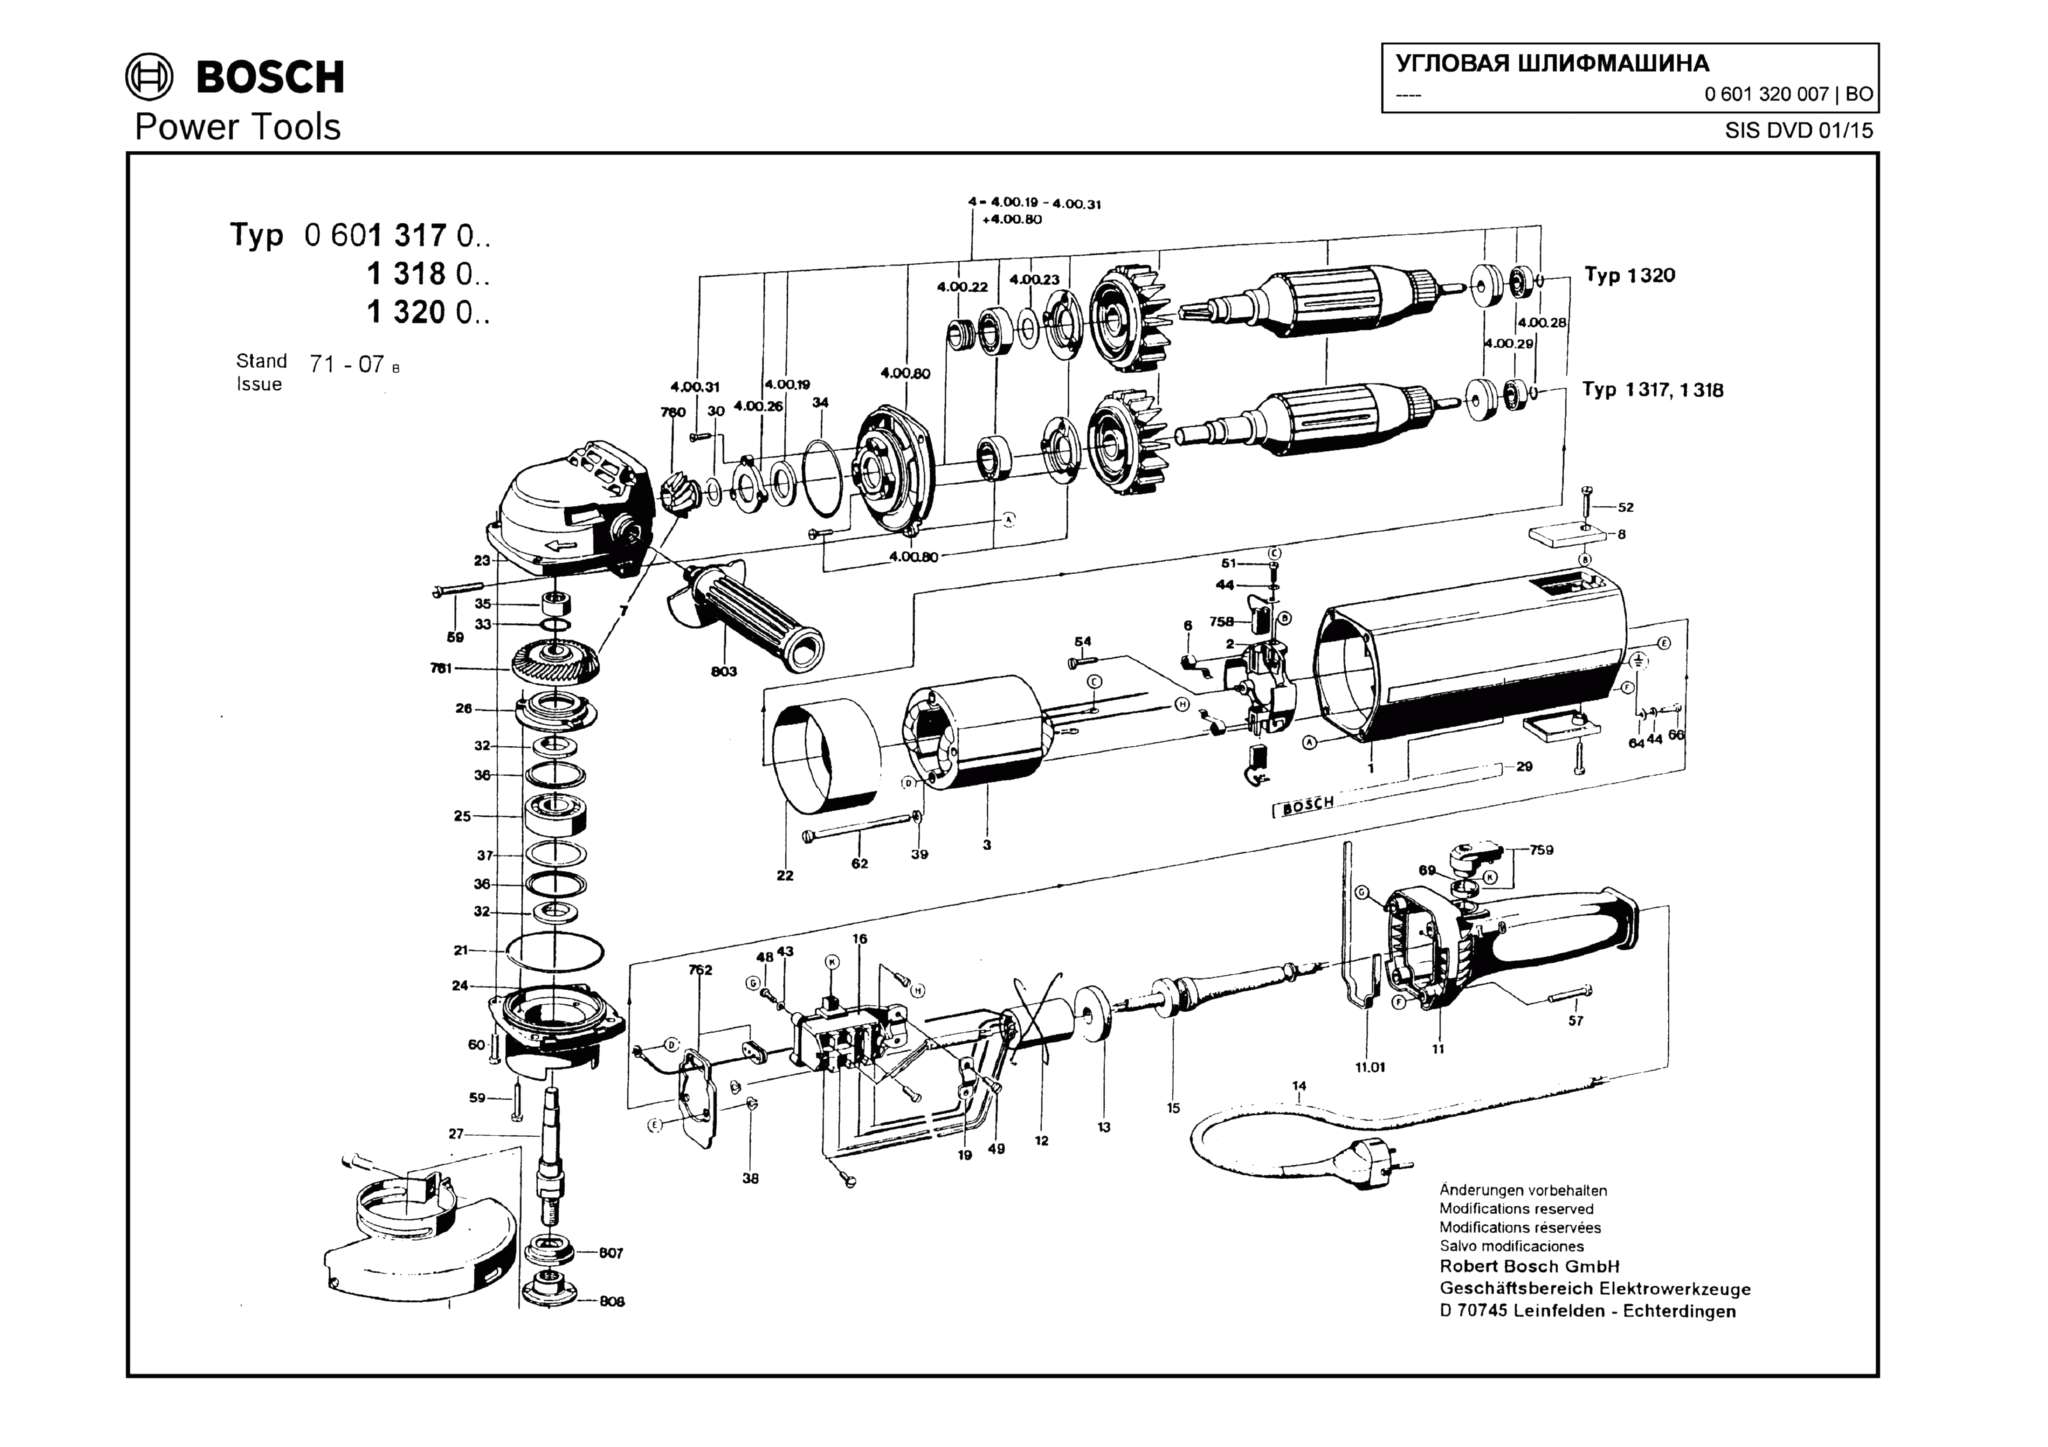 Запчасти, схема и деталировка Bosch (ТИП 0601320007)